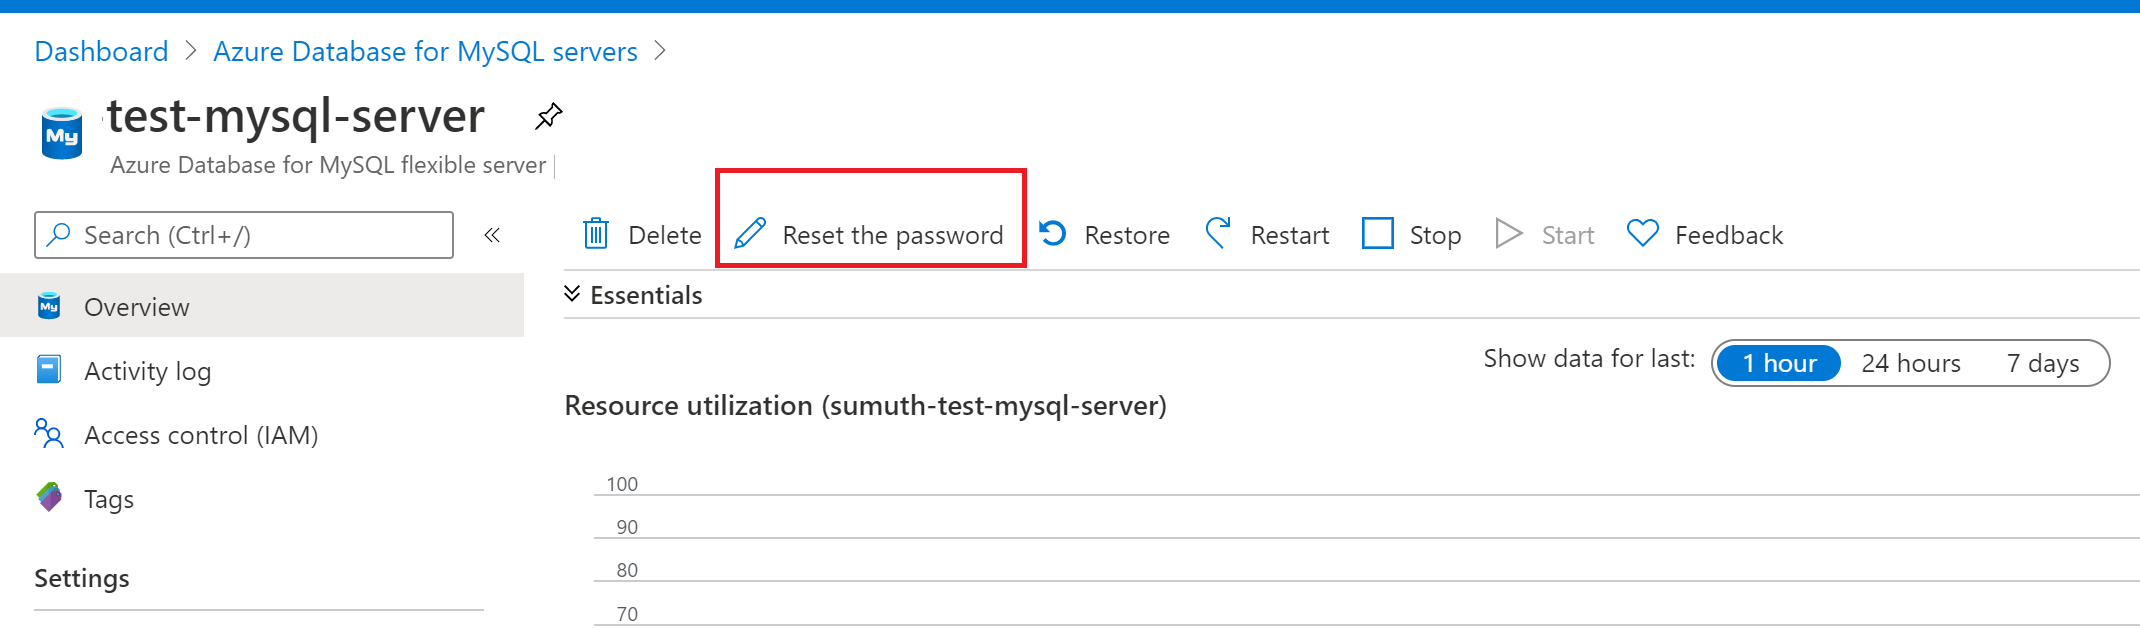 Reset your password for Azure Database for MySQL flexible server.